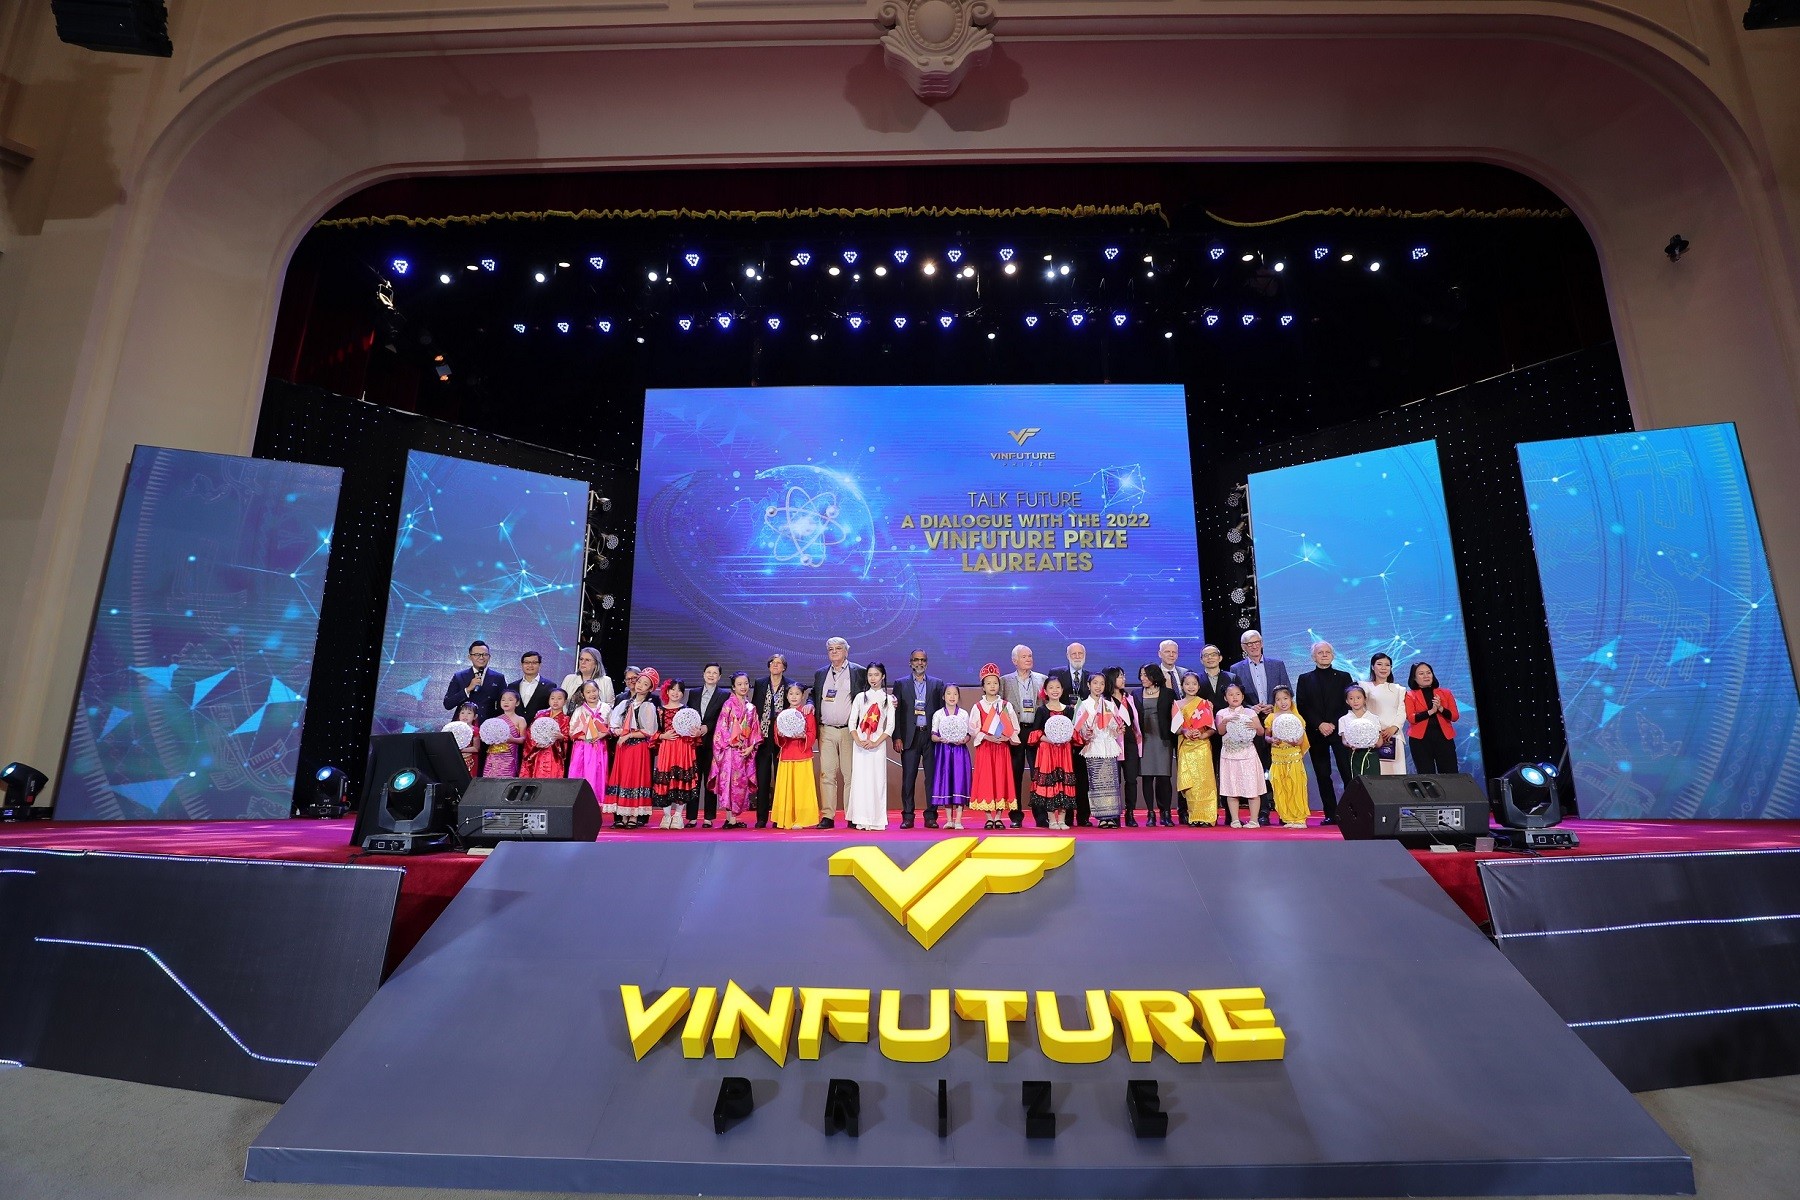 VinFuture cải thiện hình ảnh quốc gia và kích thích đổi mới sáng tạo ở Việt Nam ảnh 5